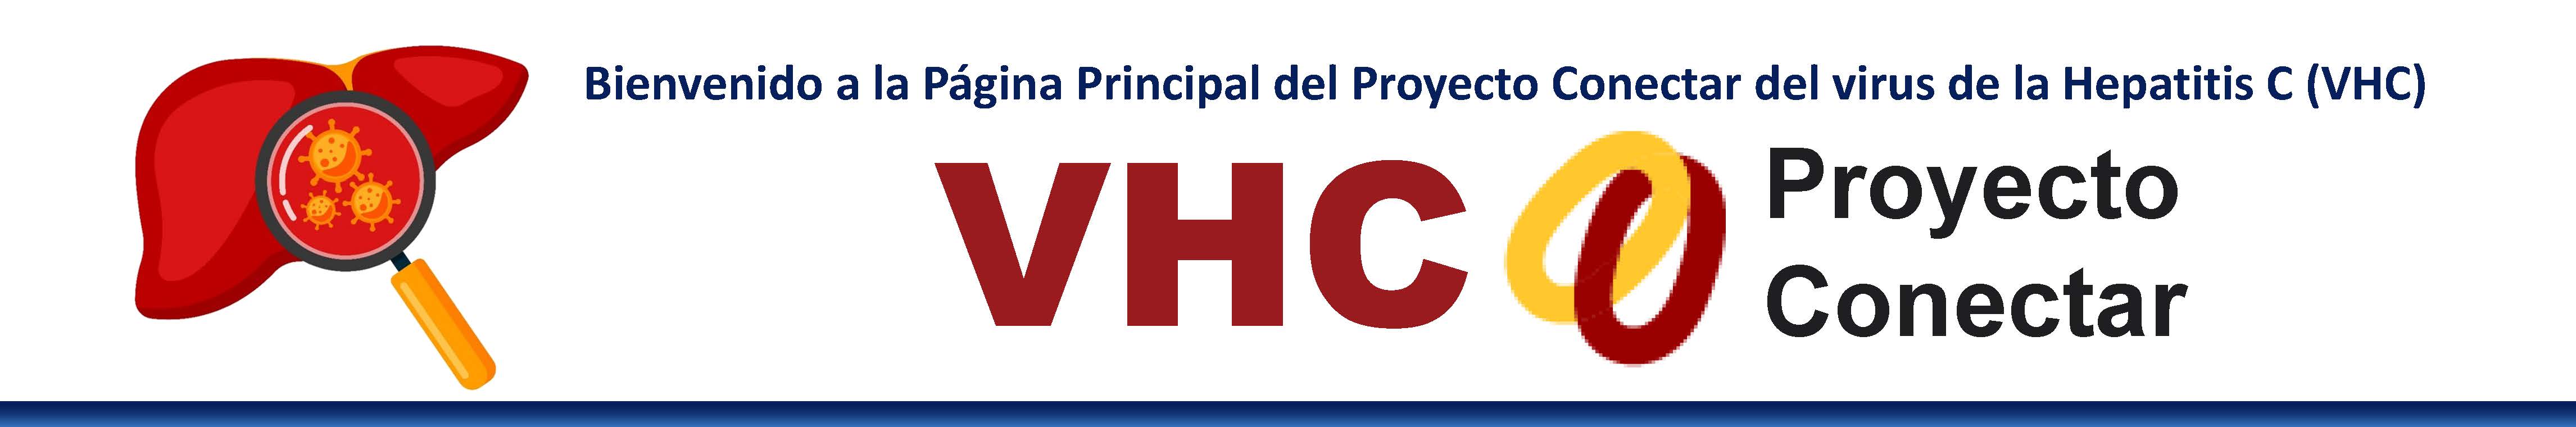 HCV Logo in Spanish